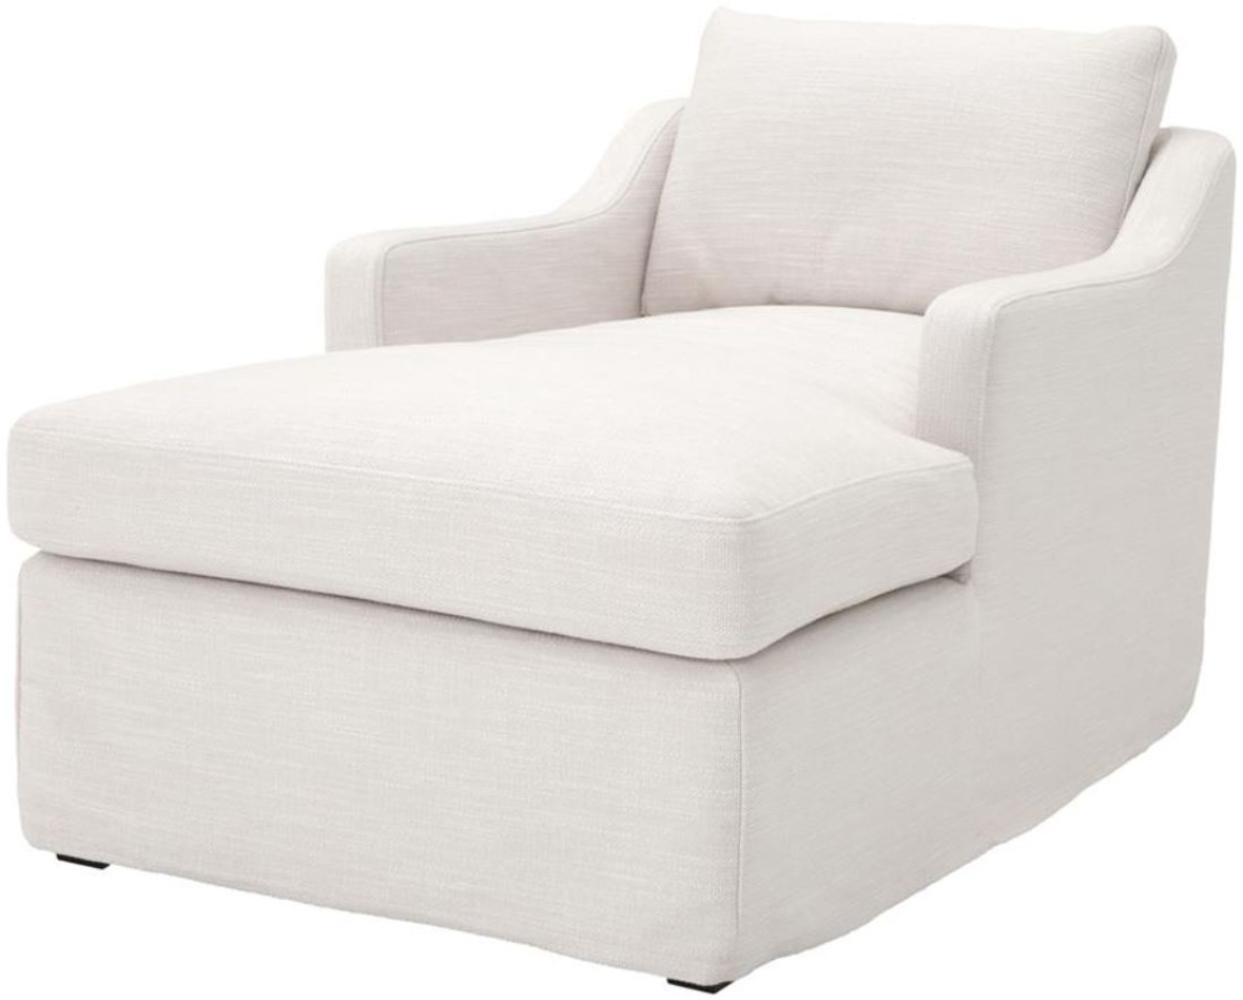 Casa Padrino Luxus Liegesessel / Schlafsessel Weiß 85 x 150 x H. 75 cm - Wohnzimmer Sessel Bild 1